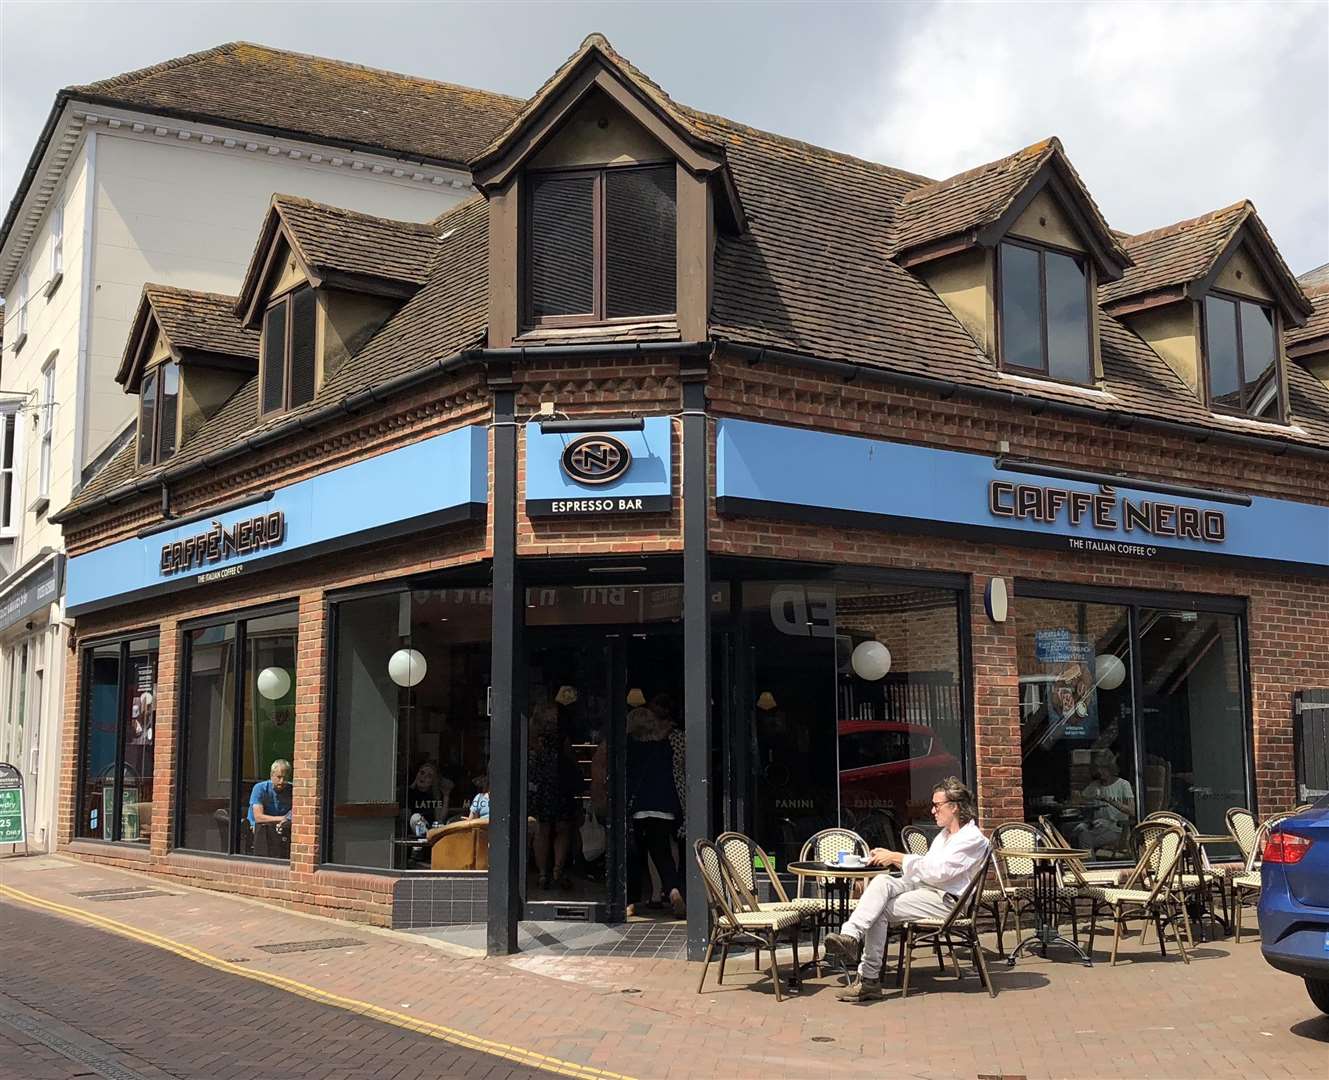 The Caffe Nero in Ashford town centre